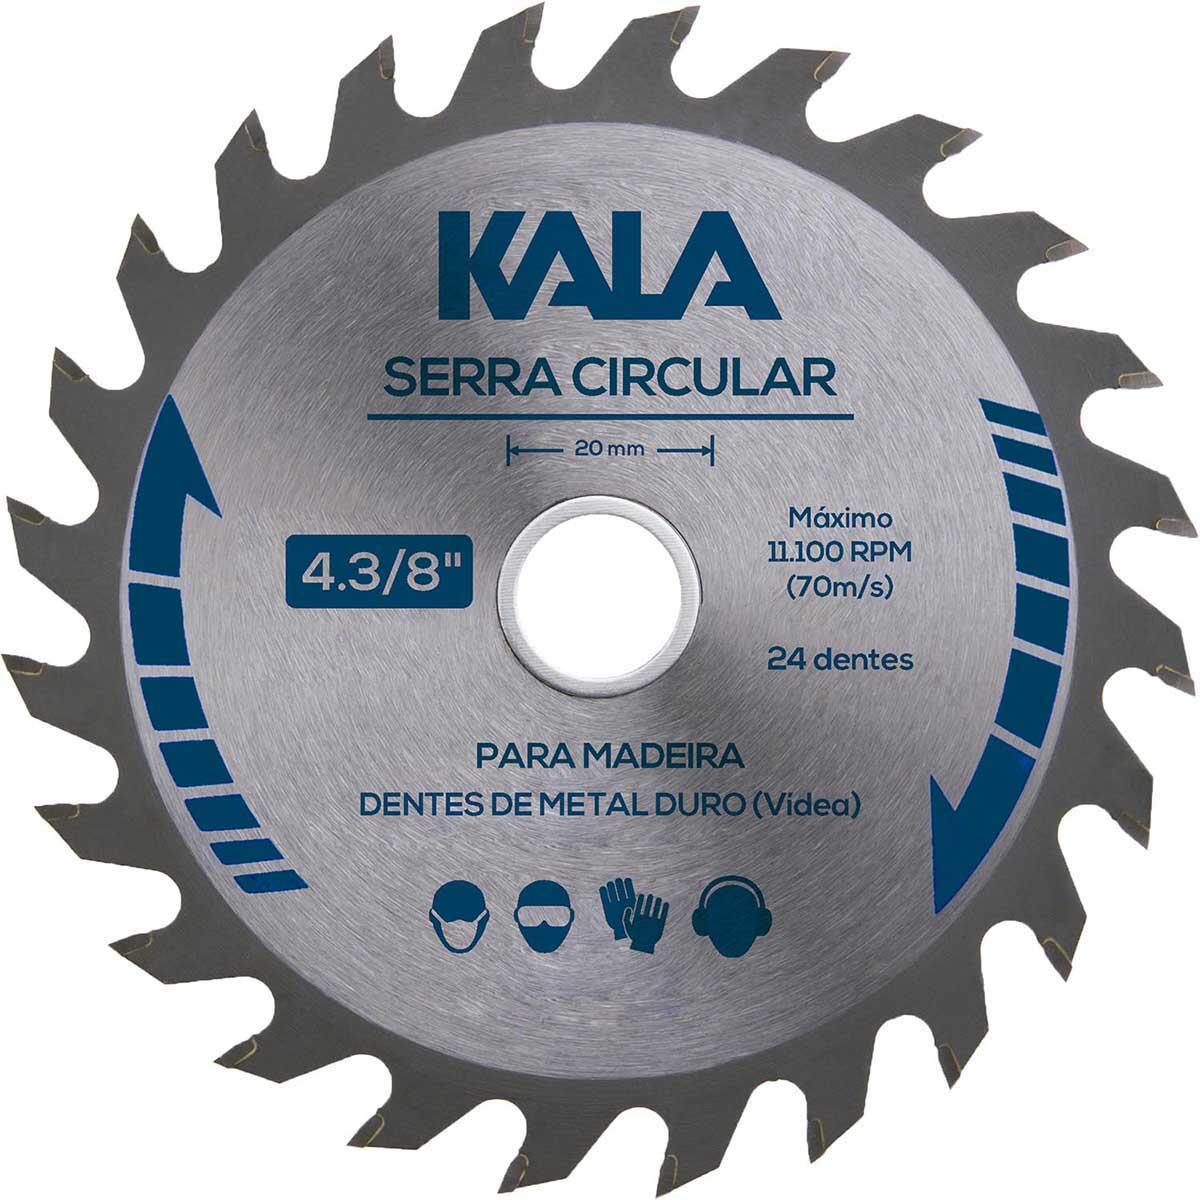 Serra Circular para Madeira com 40 Dentes 7. 1/4” Kala